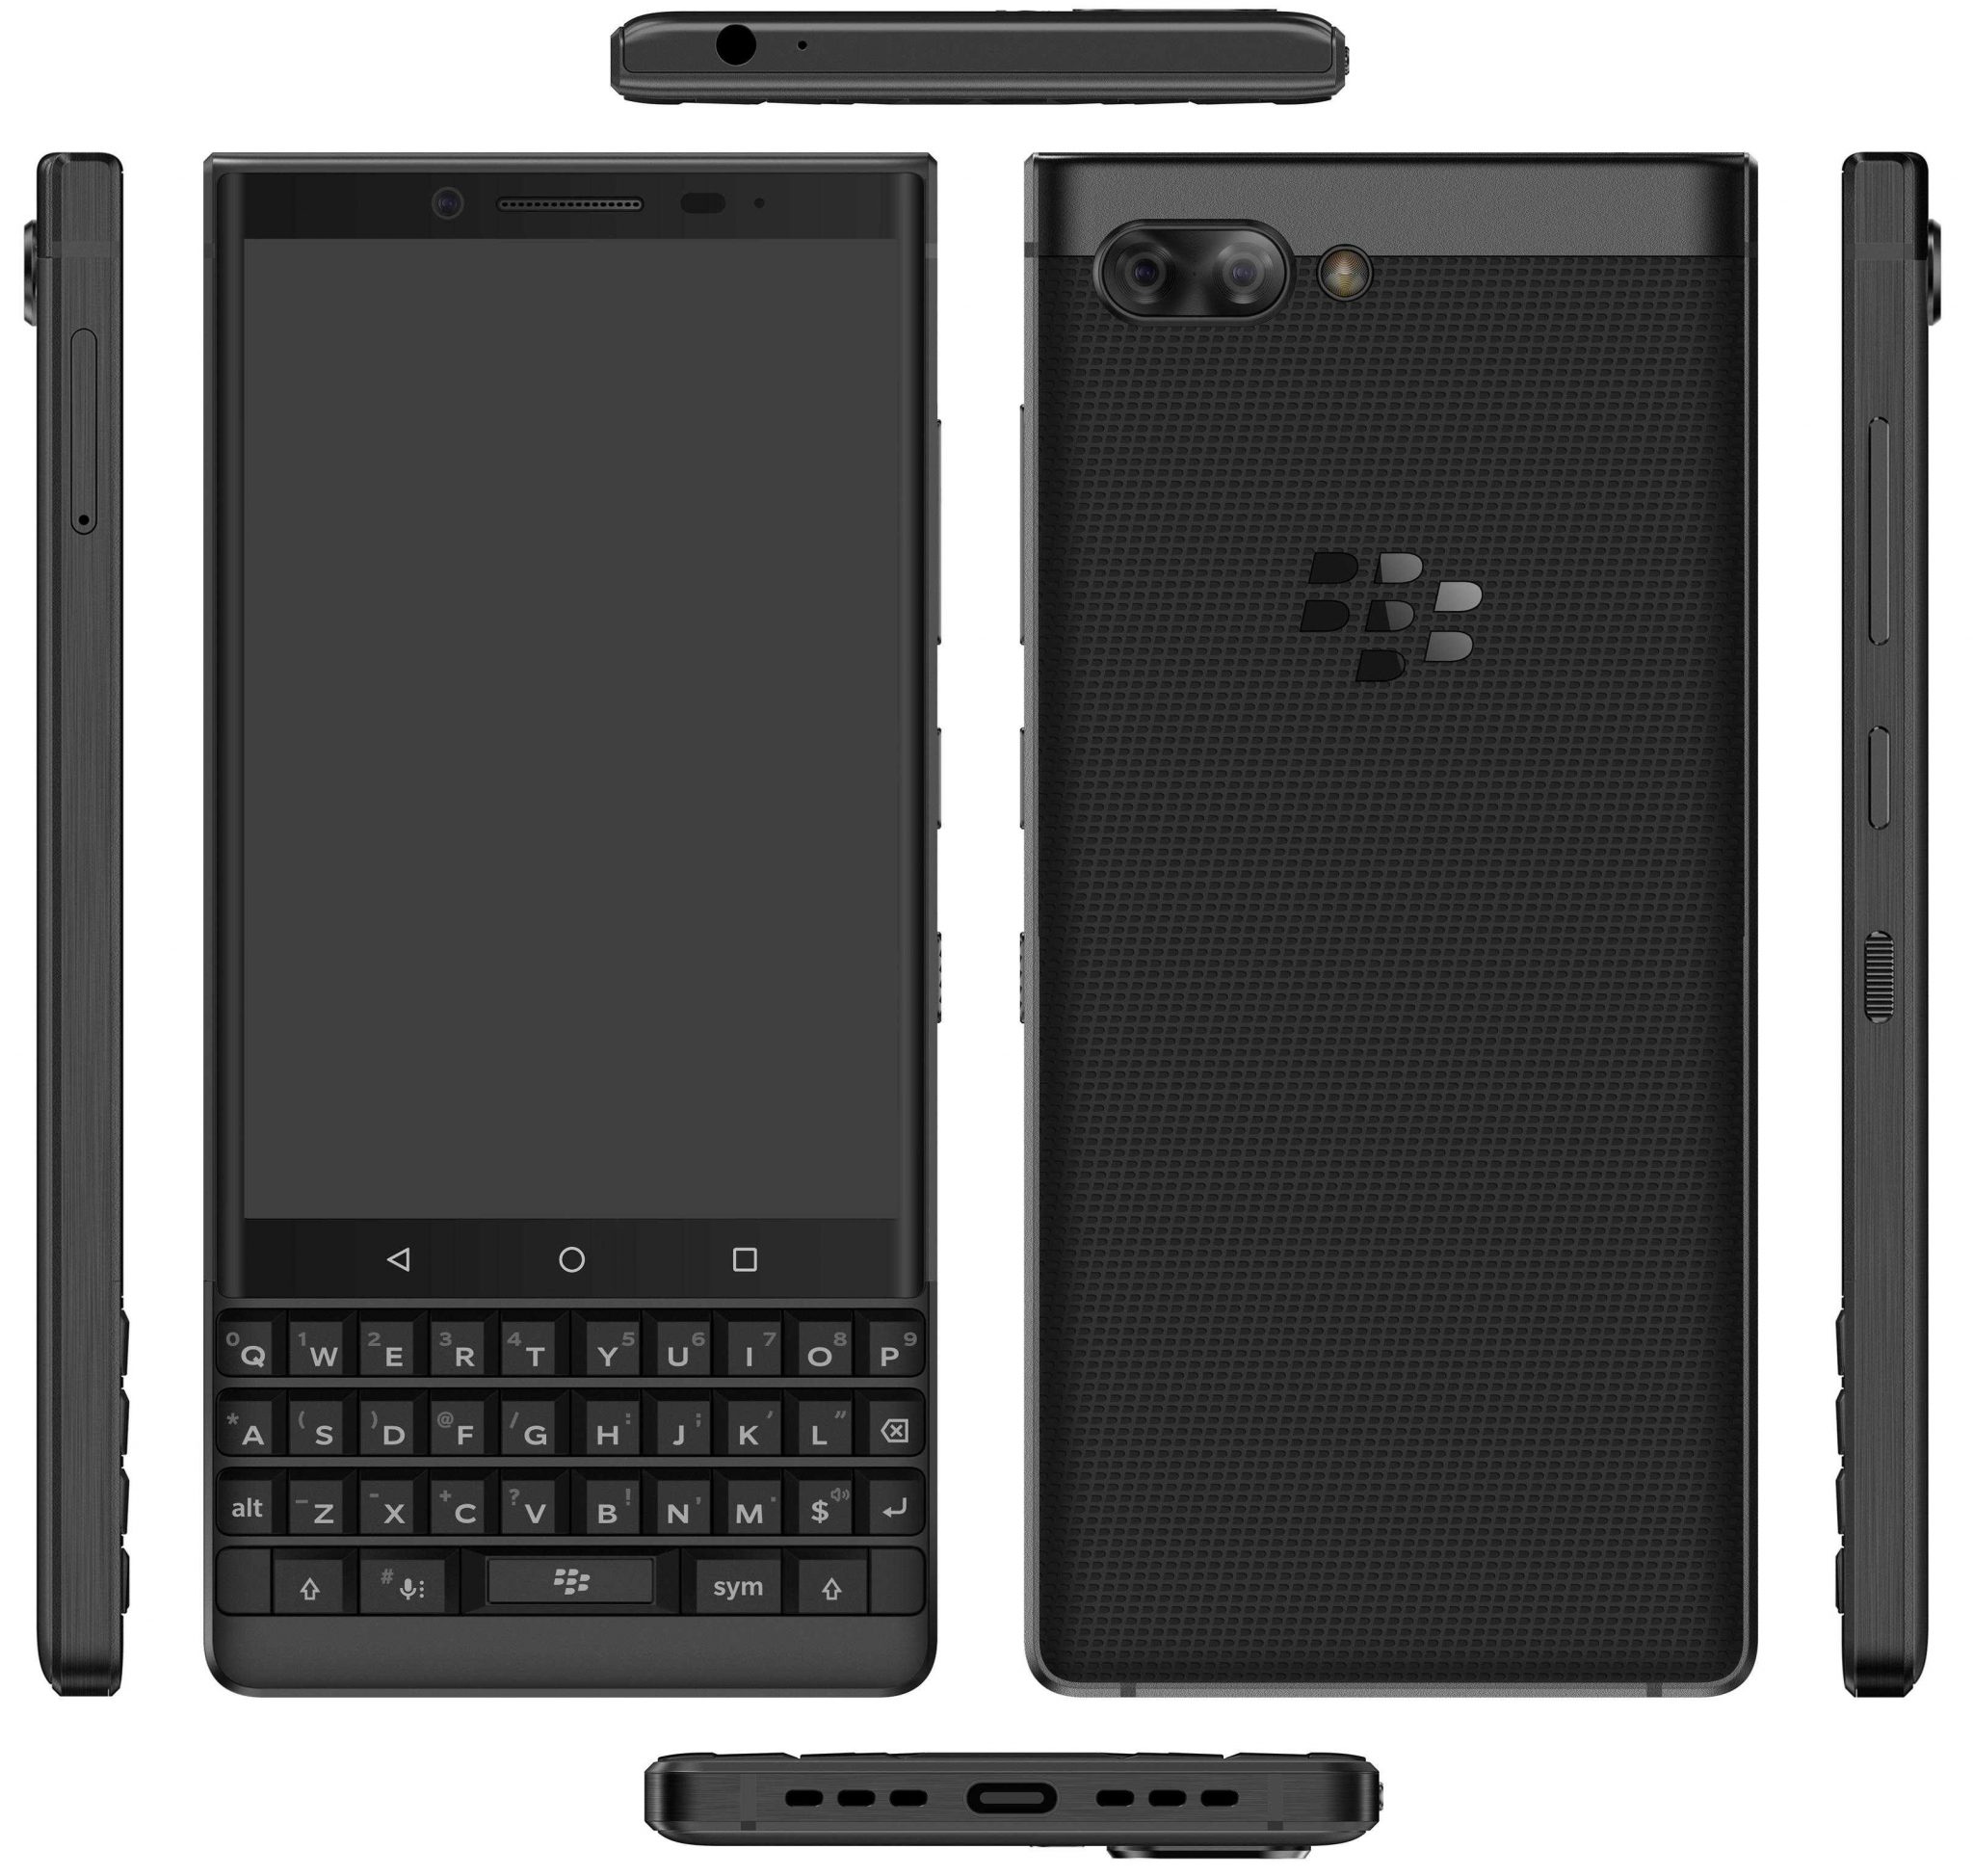 BlackBerry Key2 แบล็กเบอรี่ คีย์สอง คีย์สอง : ภาพที่ 1